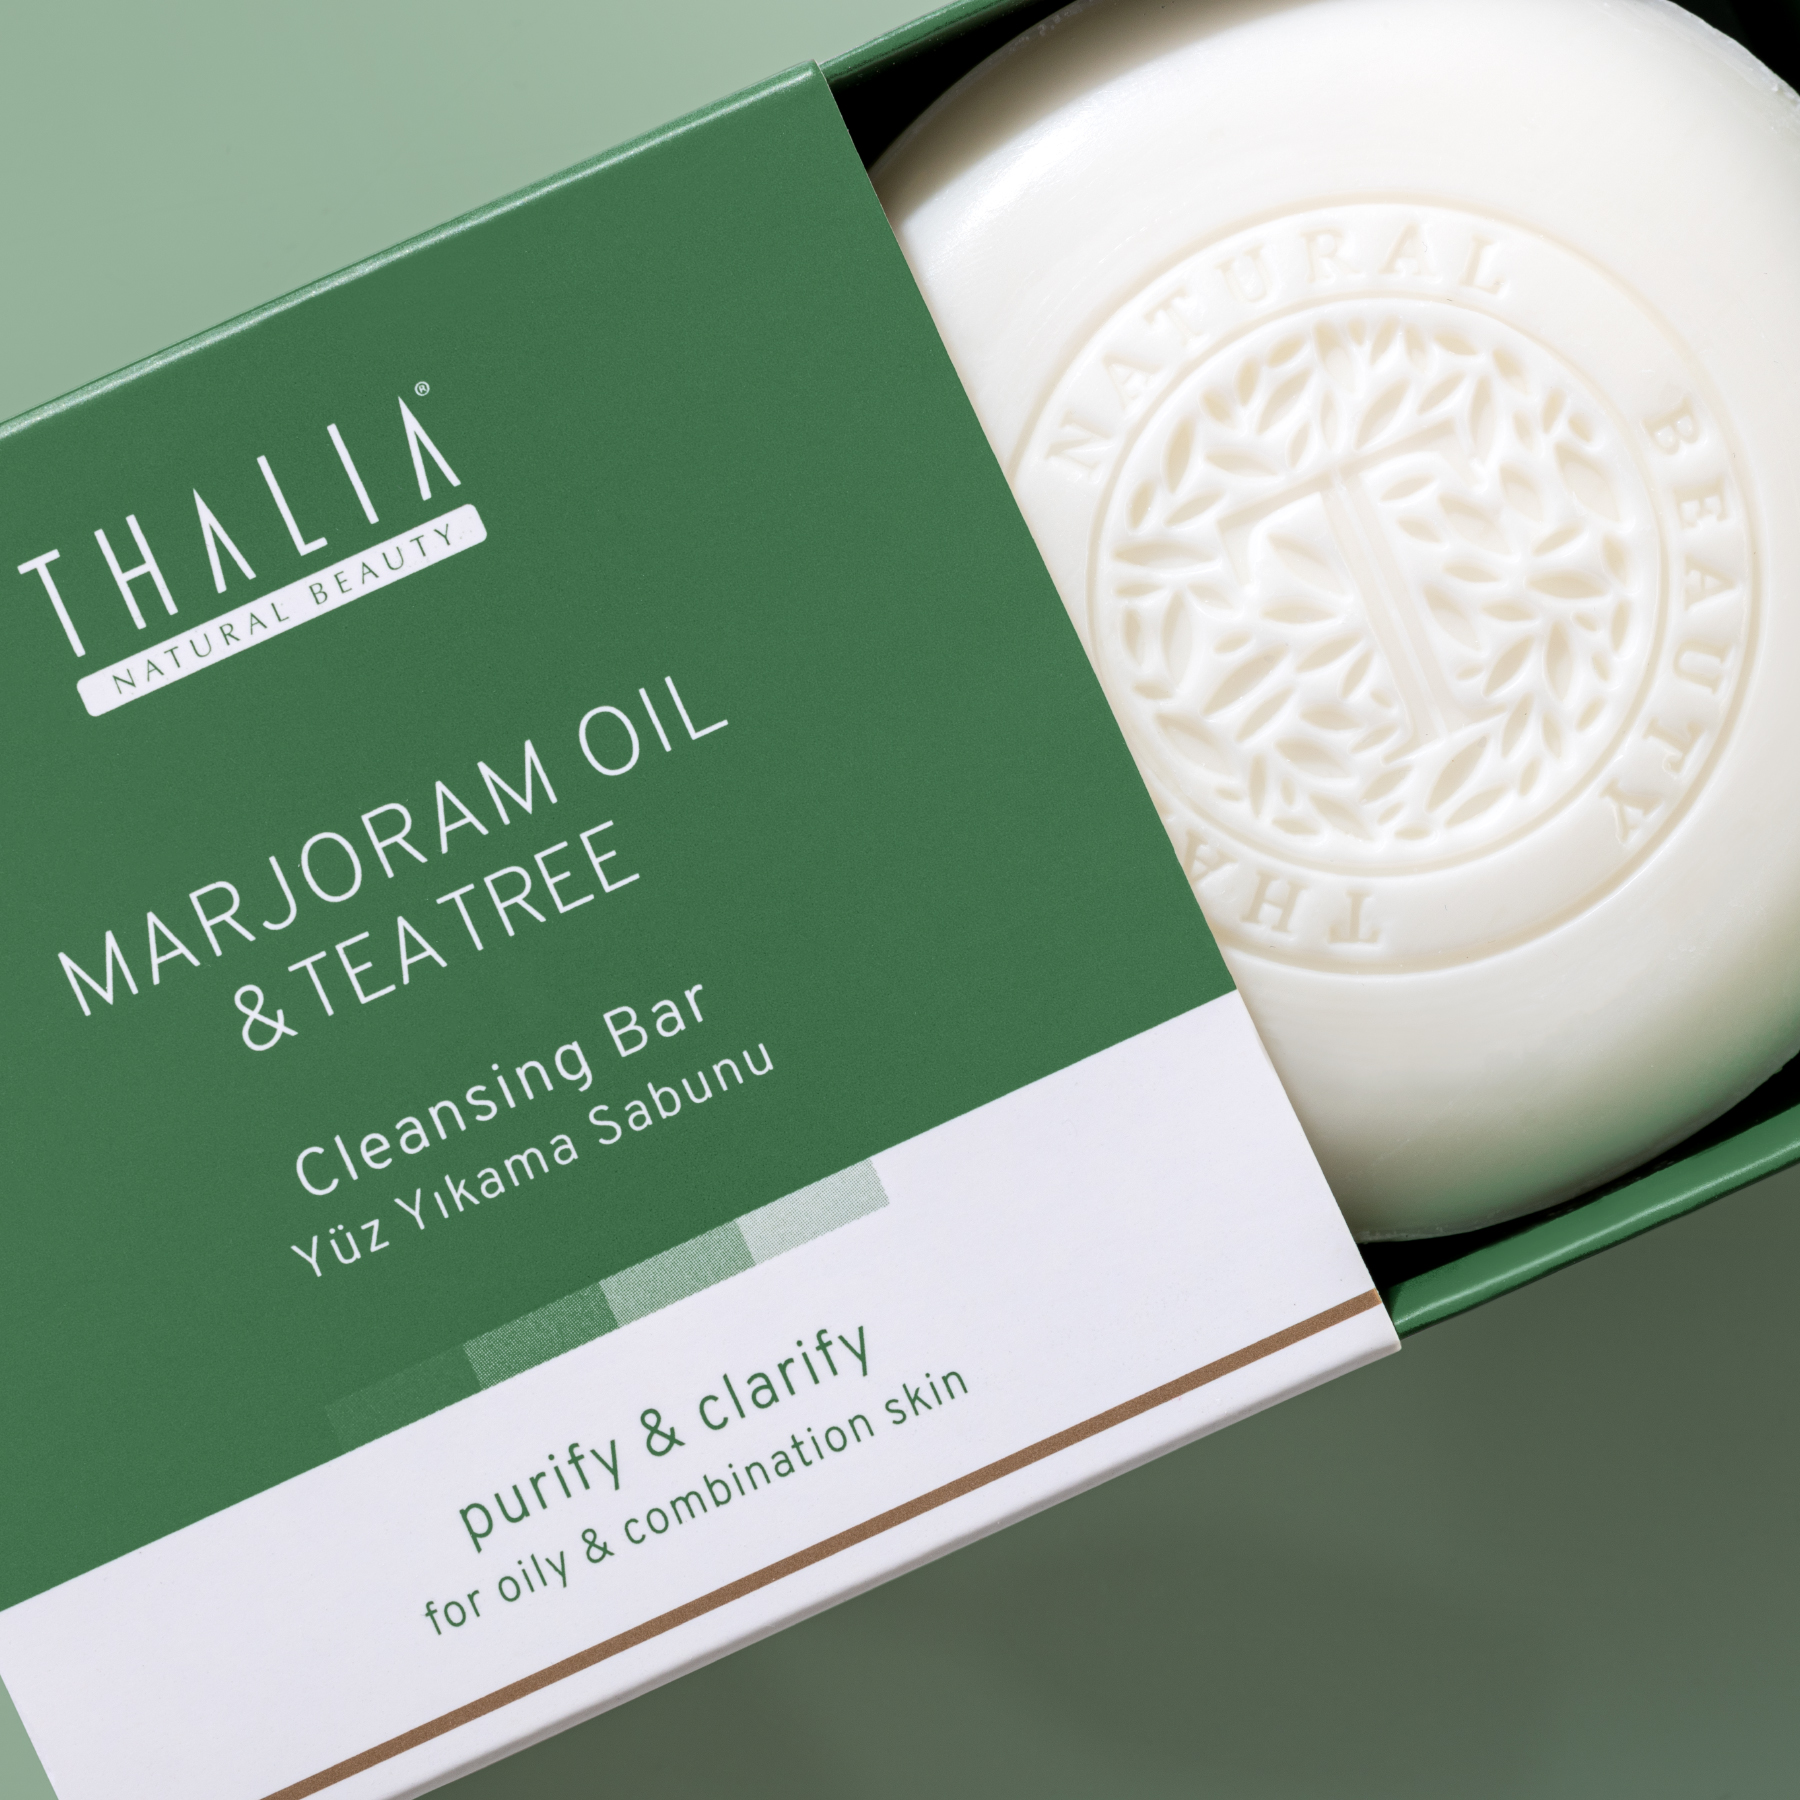 Thalia Akne Gidermeye & Gözenek Sıkılaştırmaya Yardımcı Doğal Katı Sabun 120 gr Mercan Köşk (Marjoram)